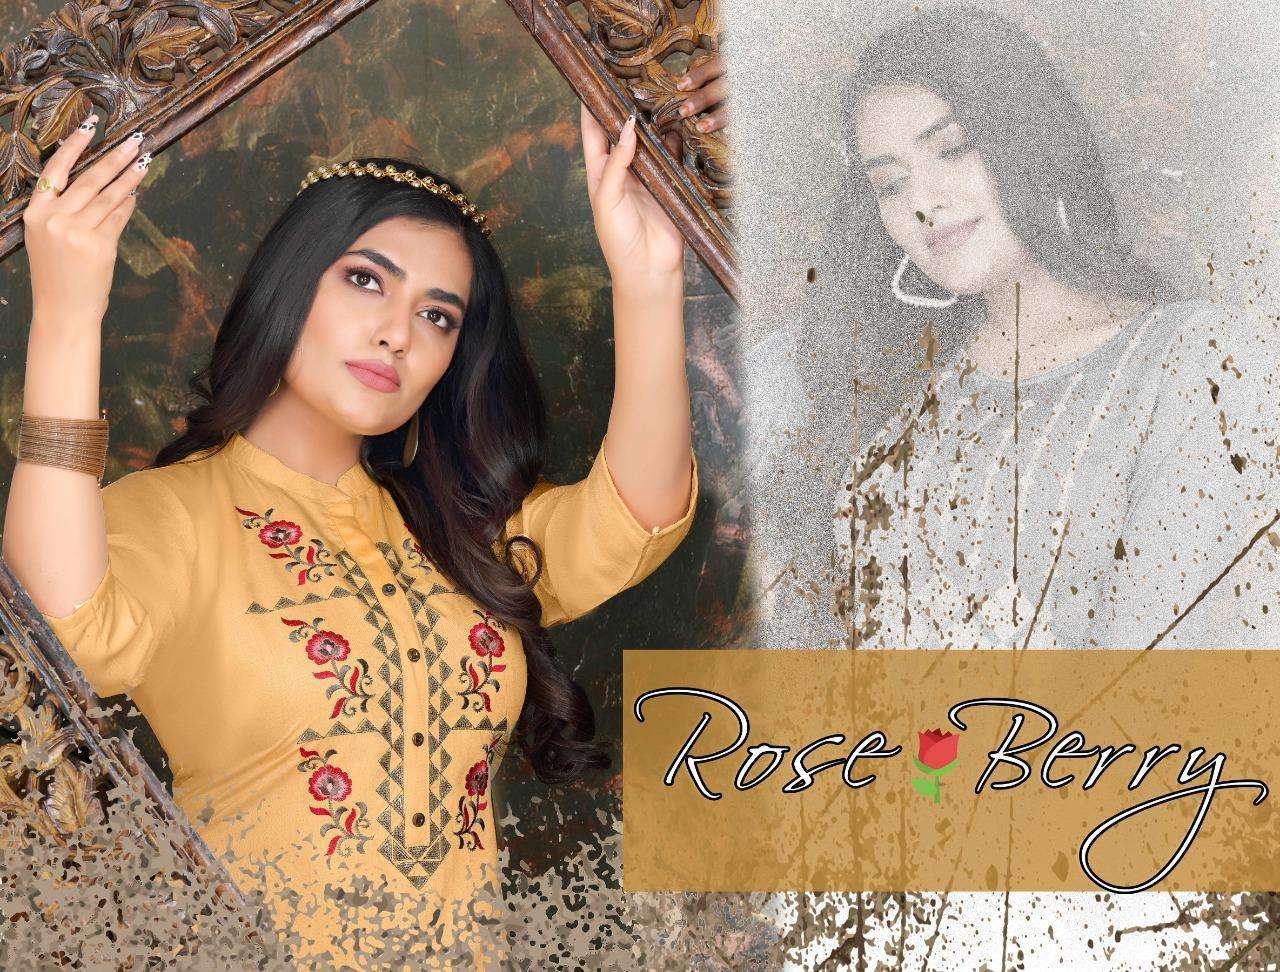 beauty queen rose berry series 501-508 14 kg cross rayon kurti 